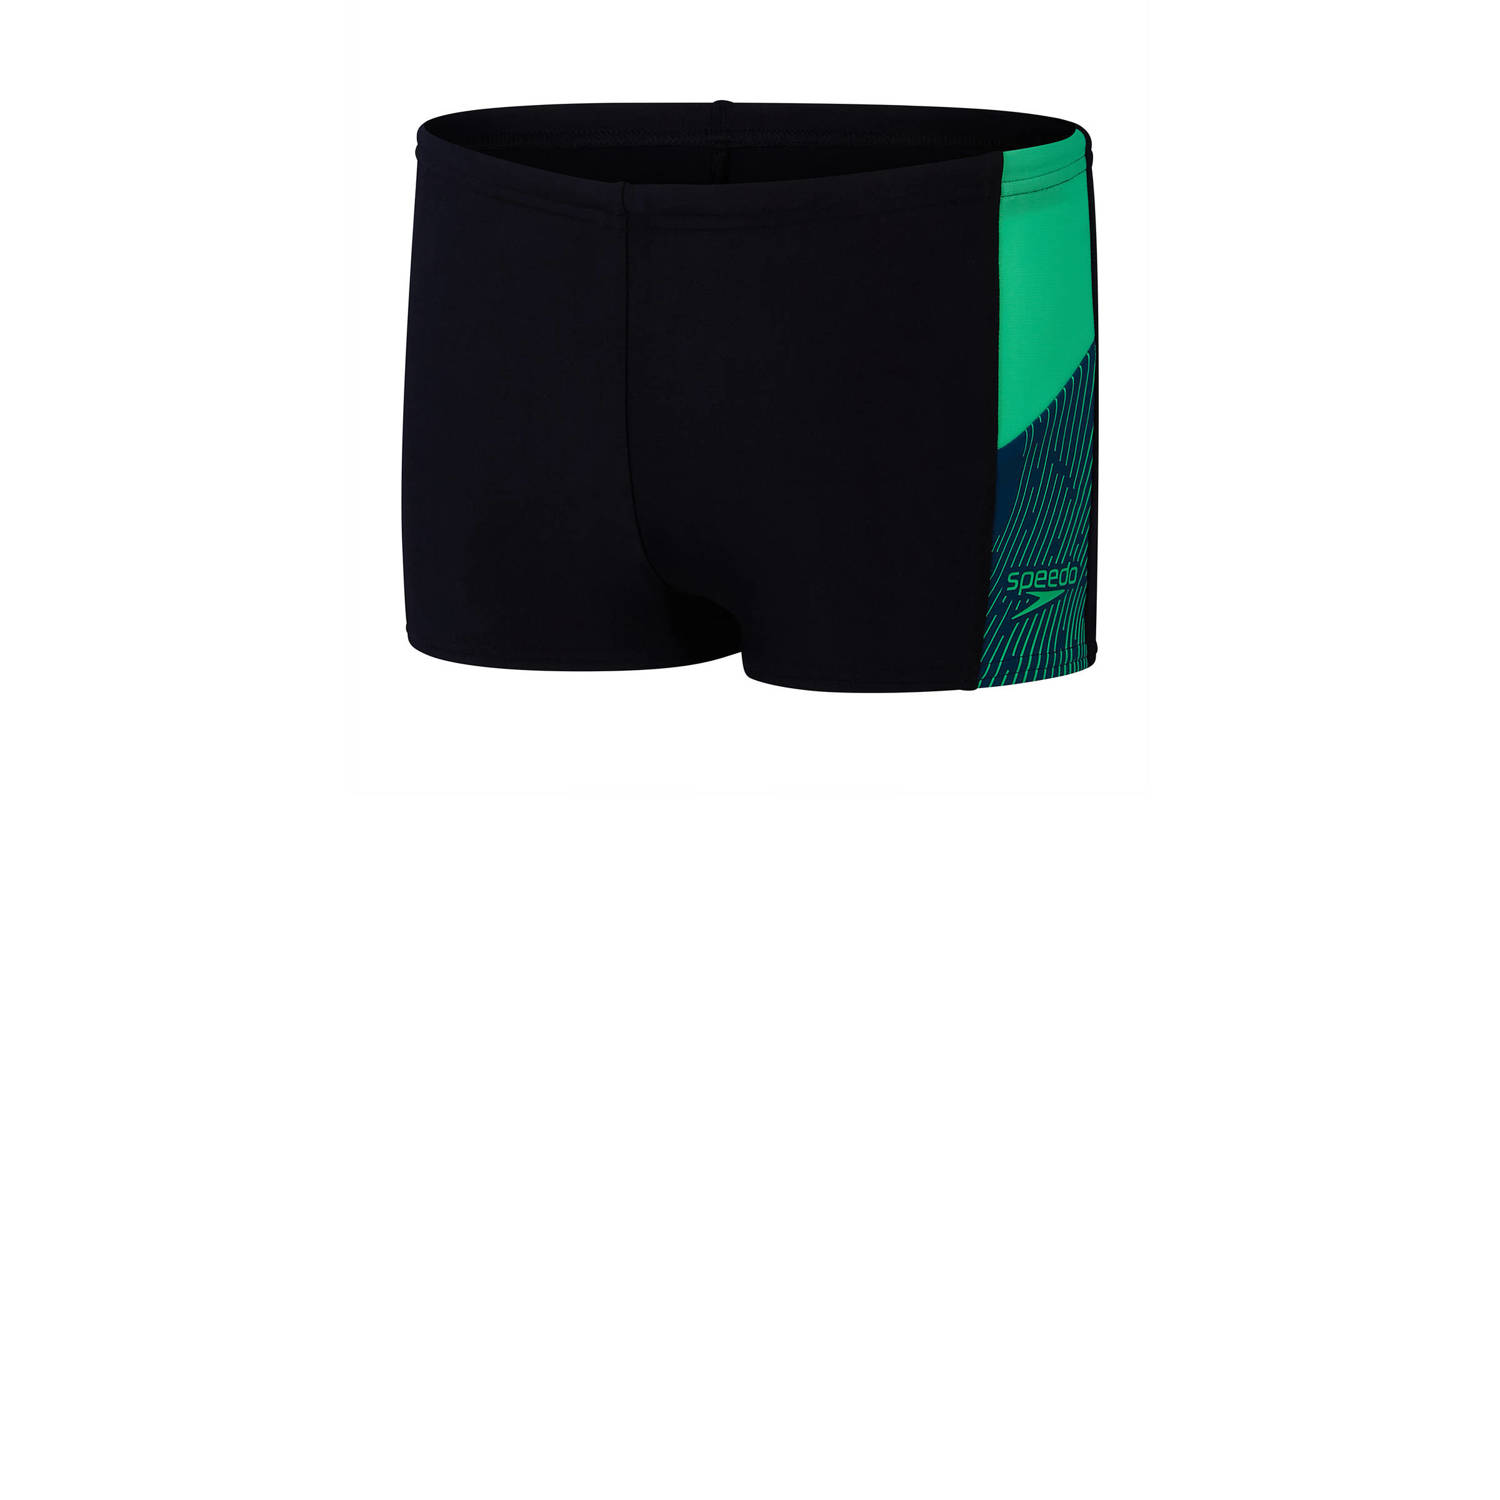 Speedo ECO EnduraFlex zwemboxer Dive zwart groen